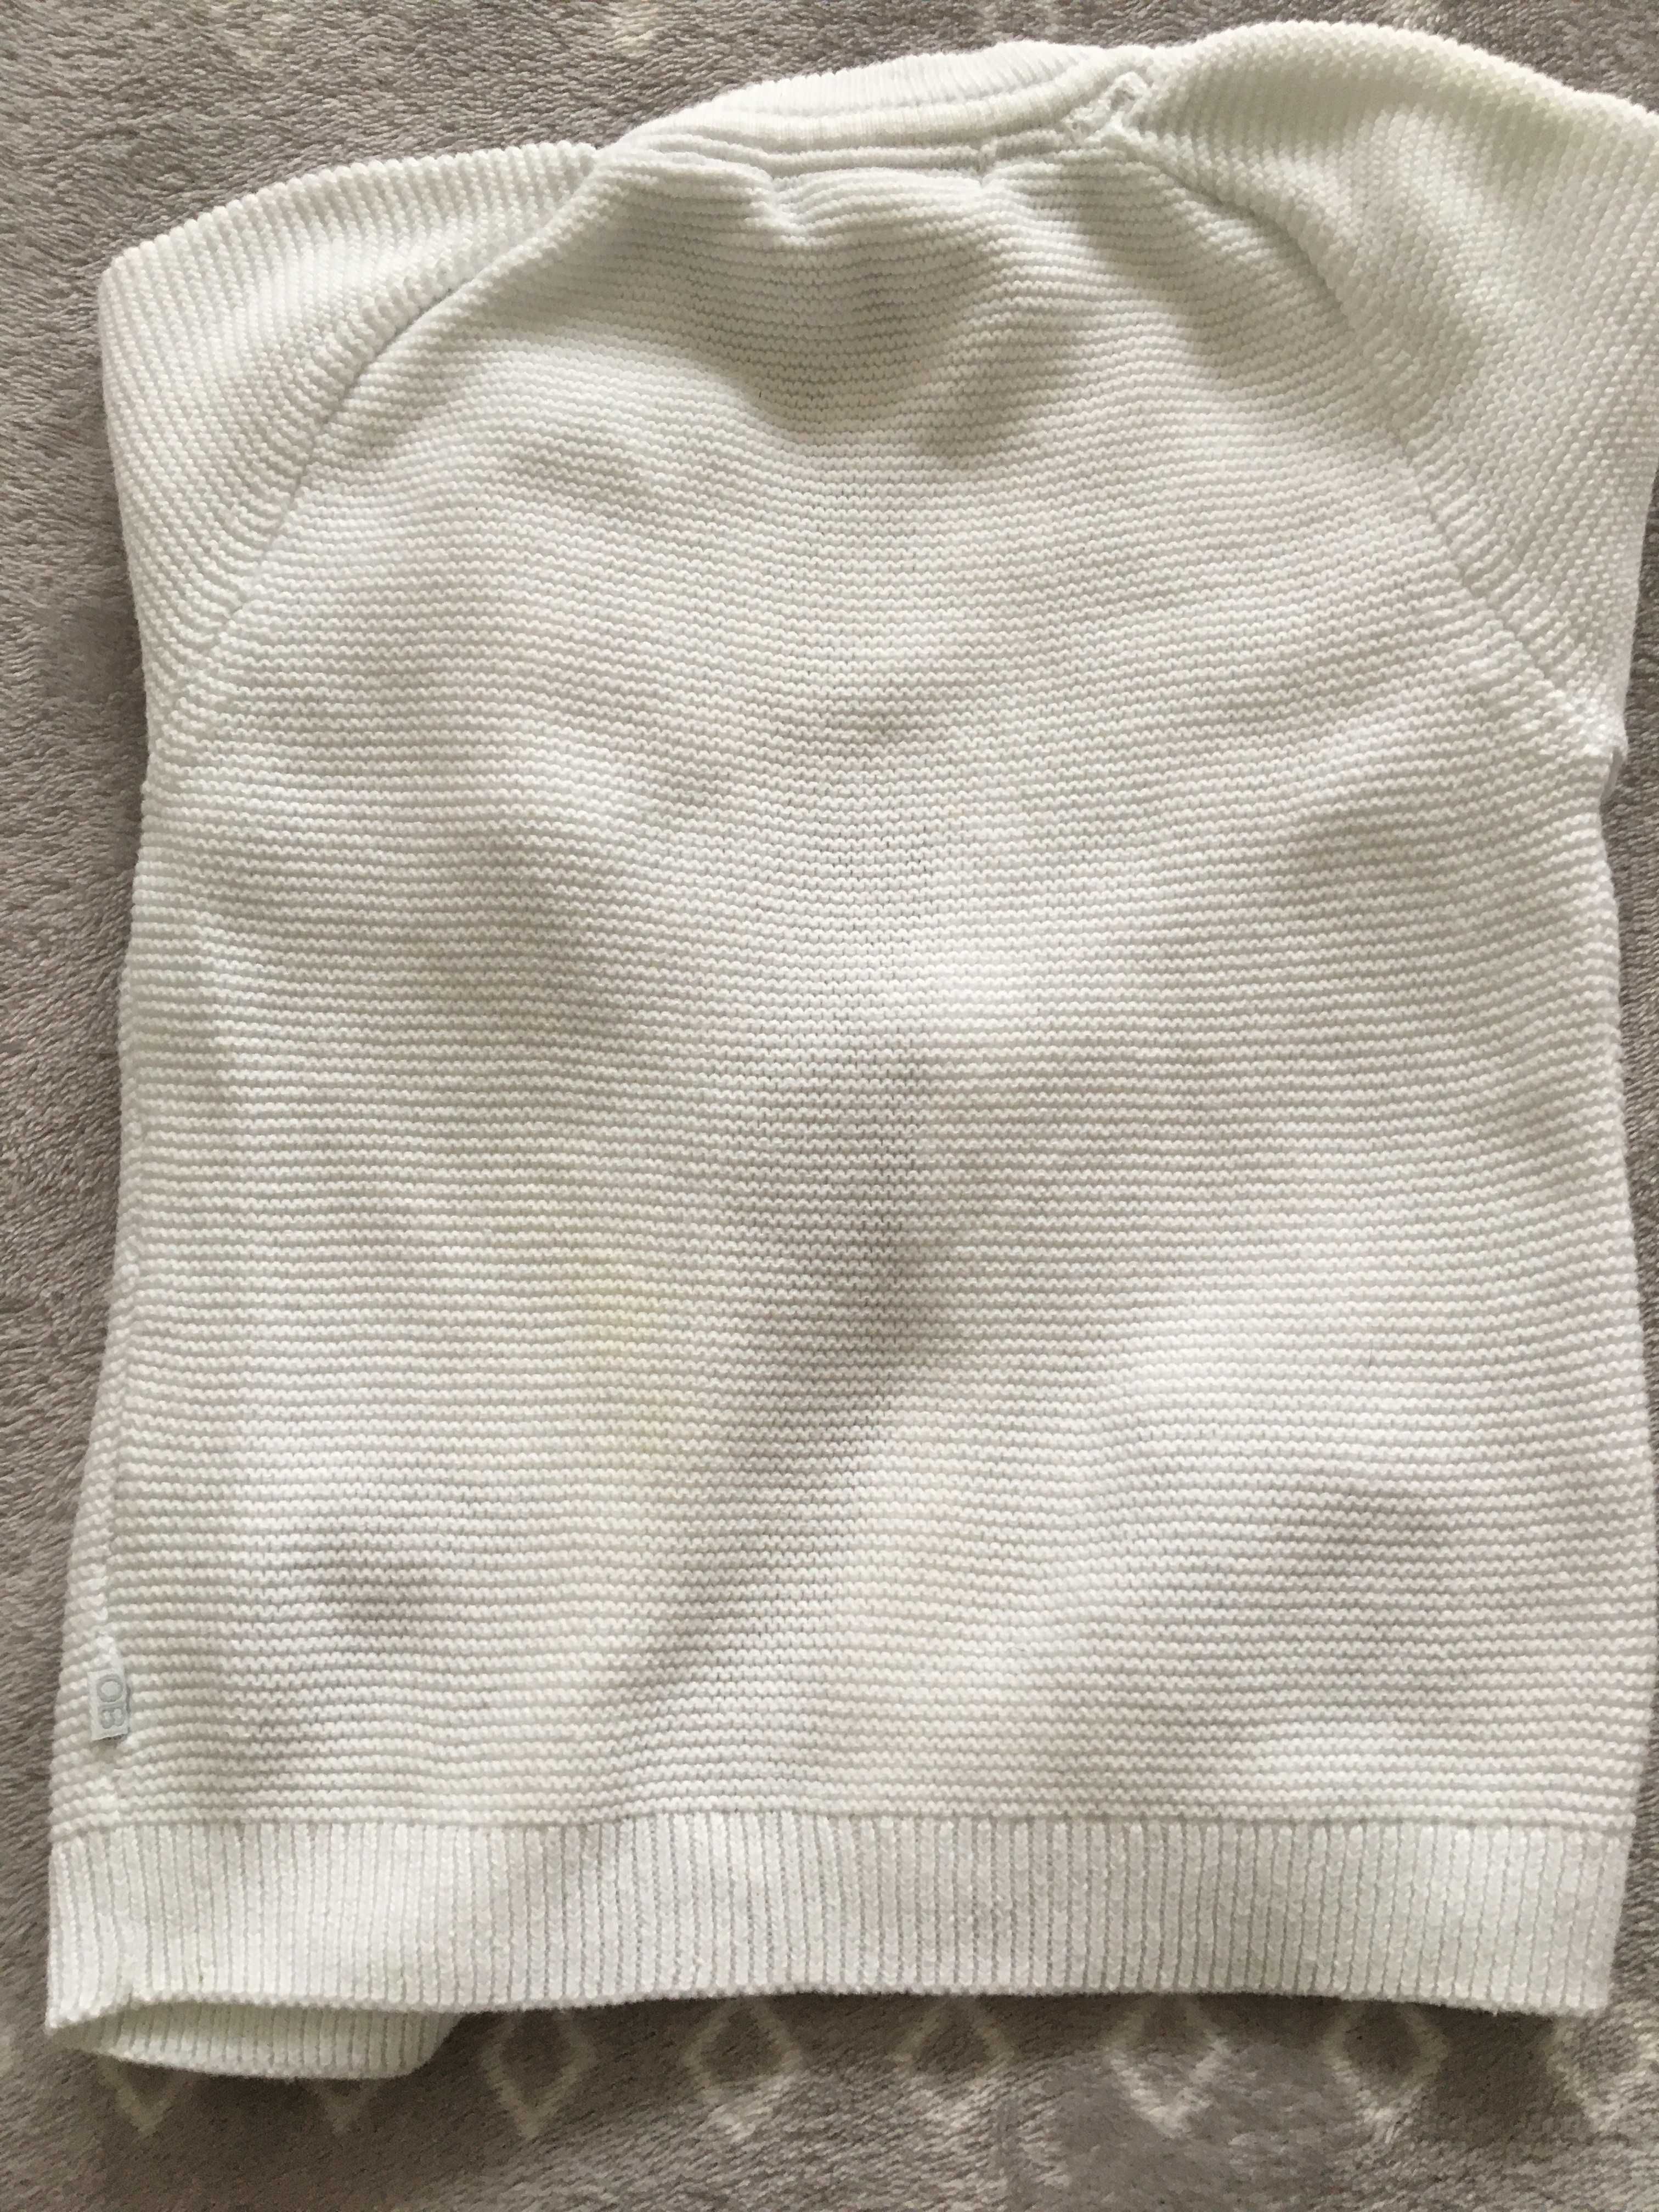 biały sweterek firmy Obaibi 6 miesiecy 68 cm